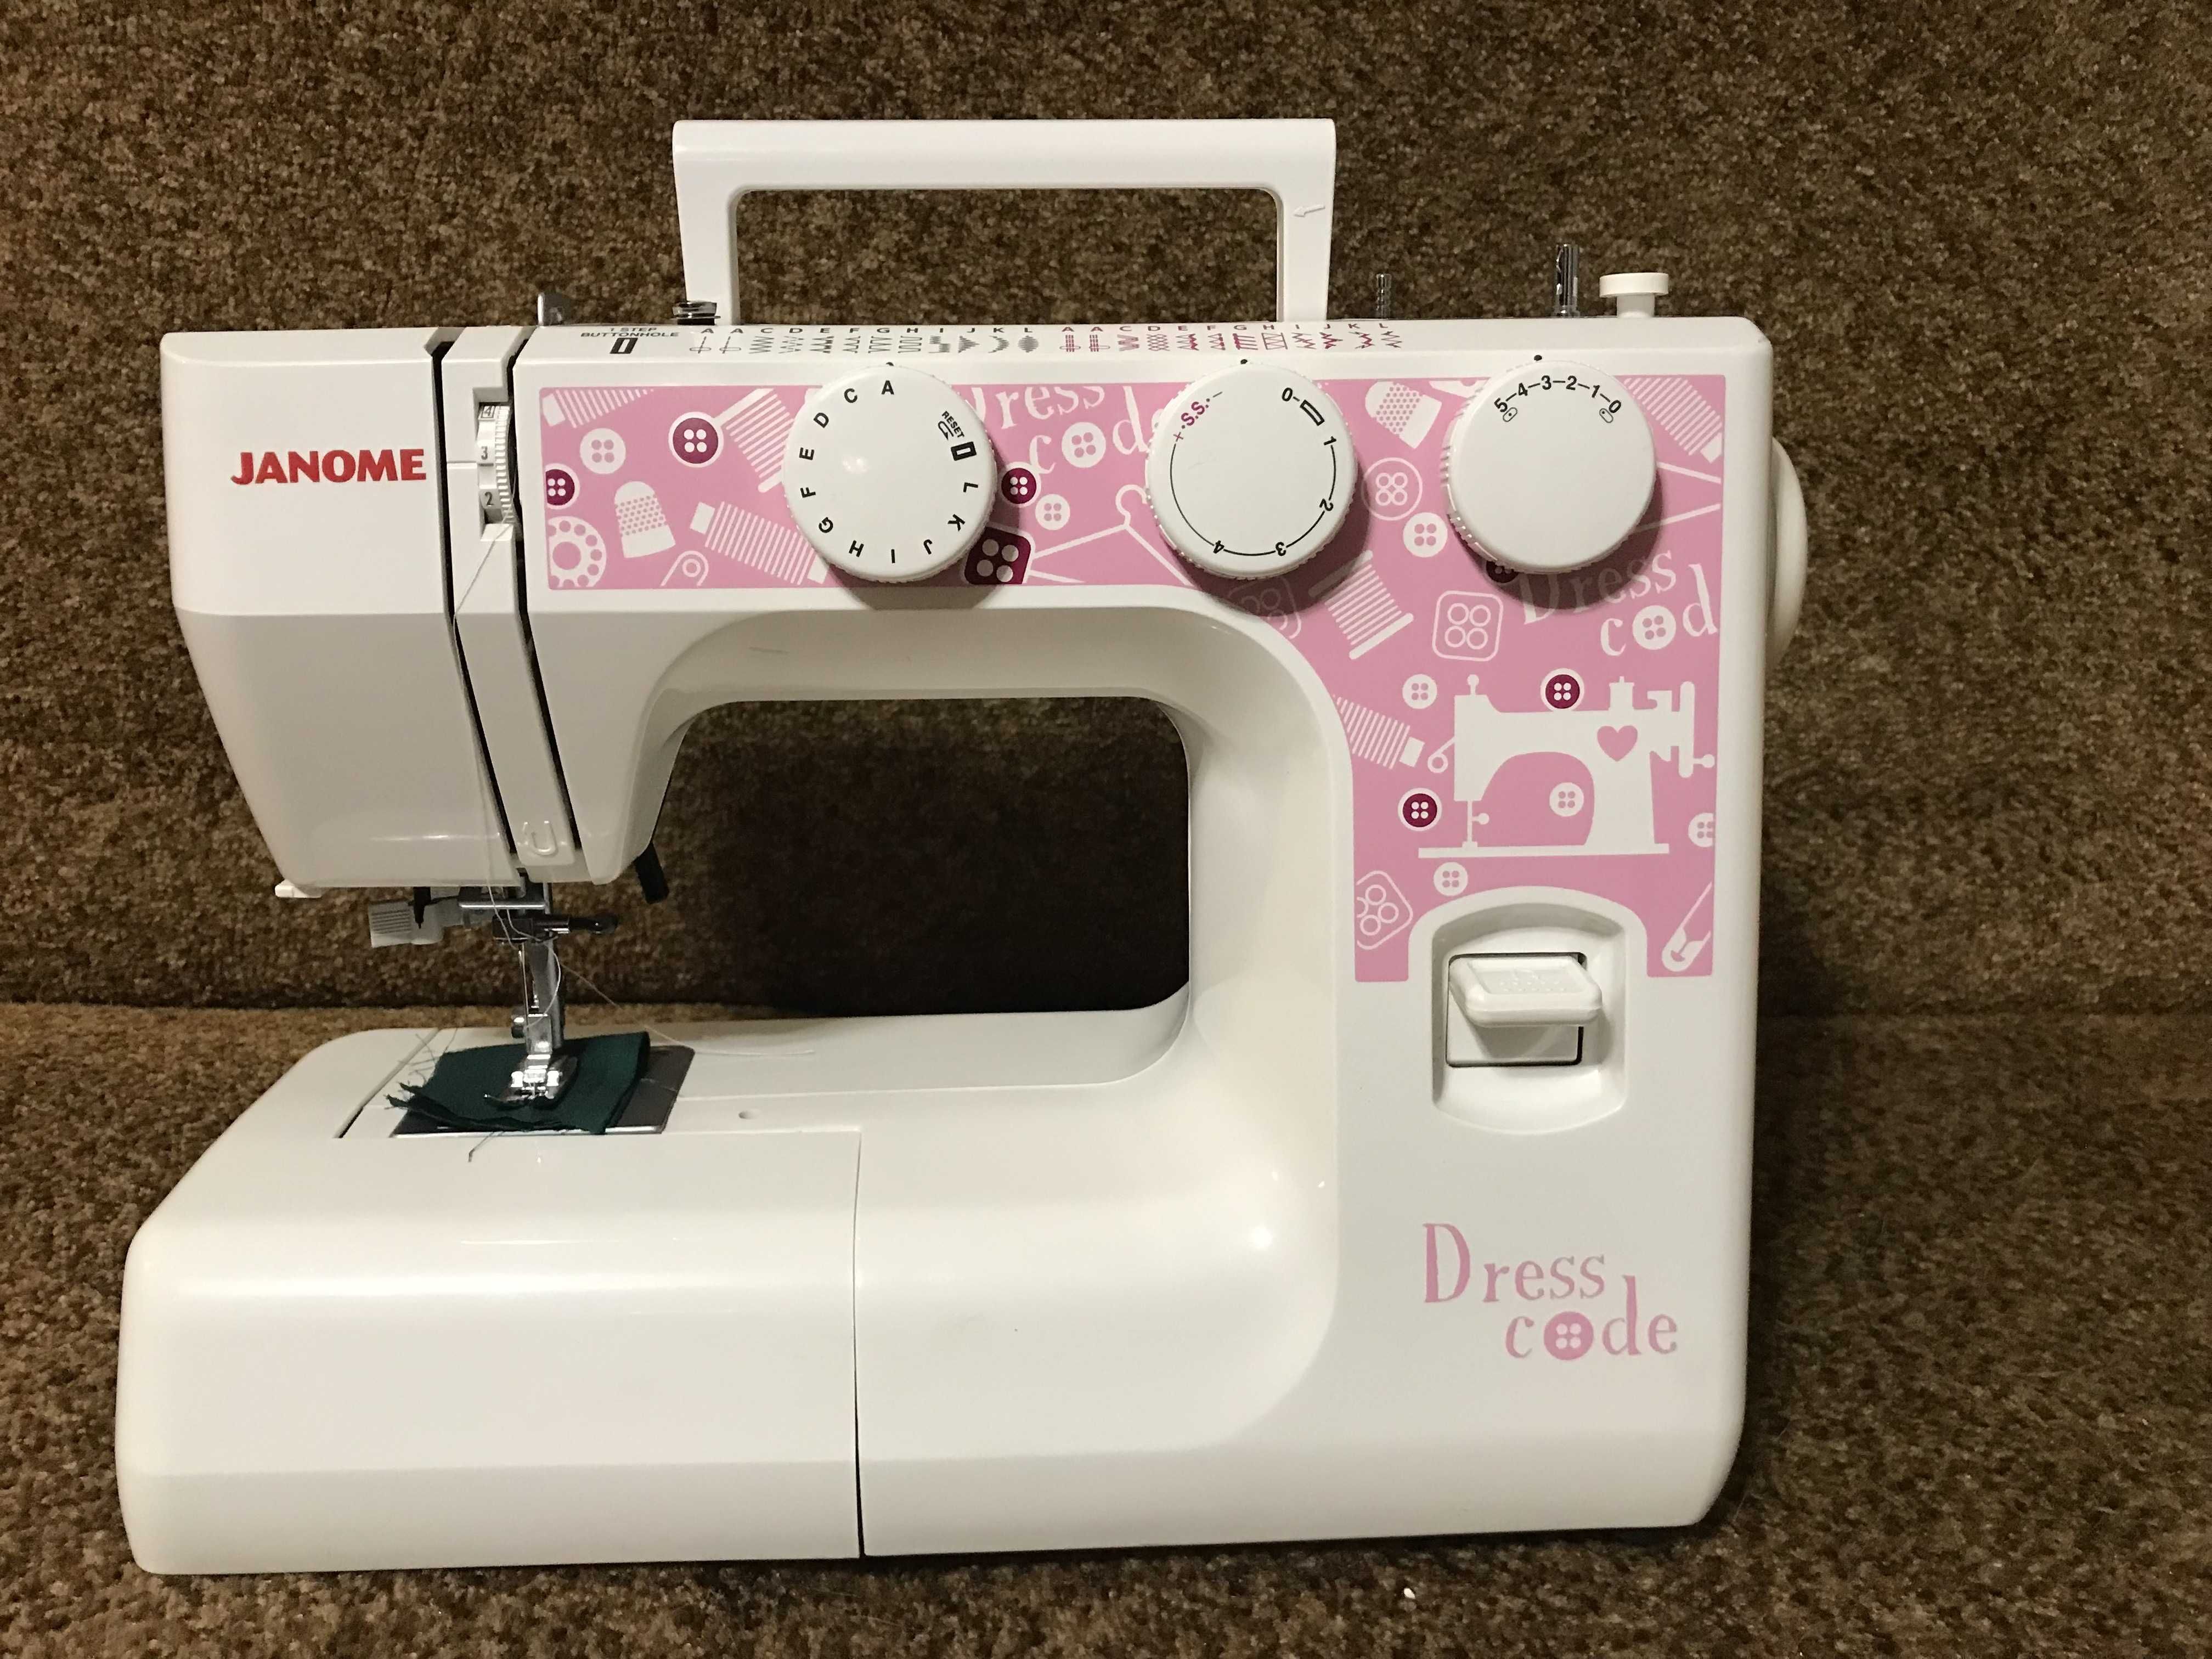 Швейная машинка JANOME DRESS CODE  (  подарок Женщинам к праздникам)